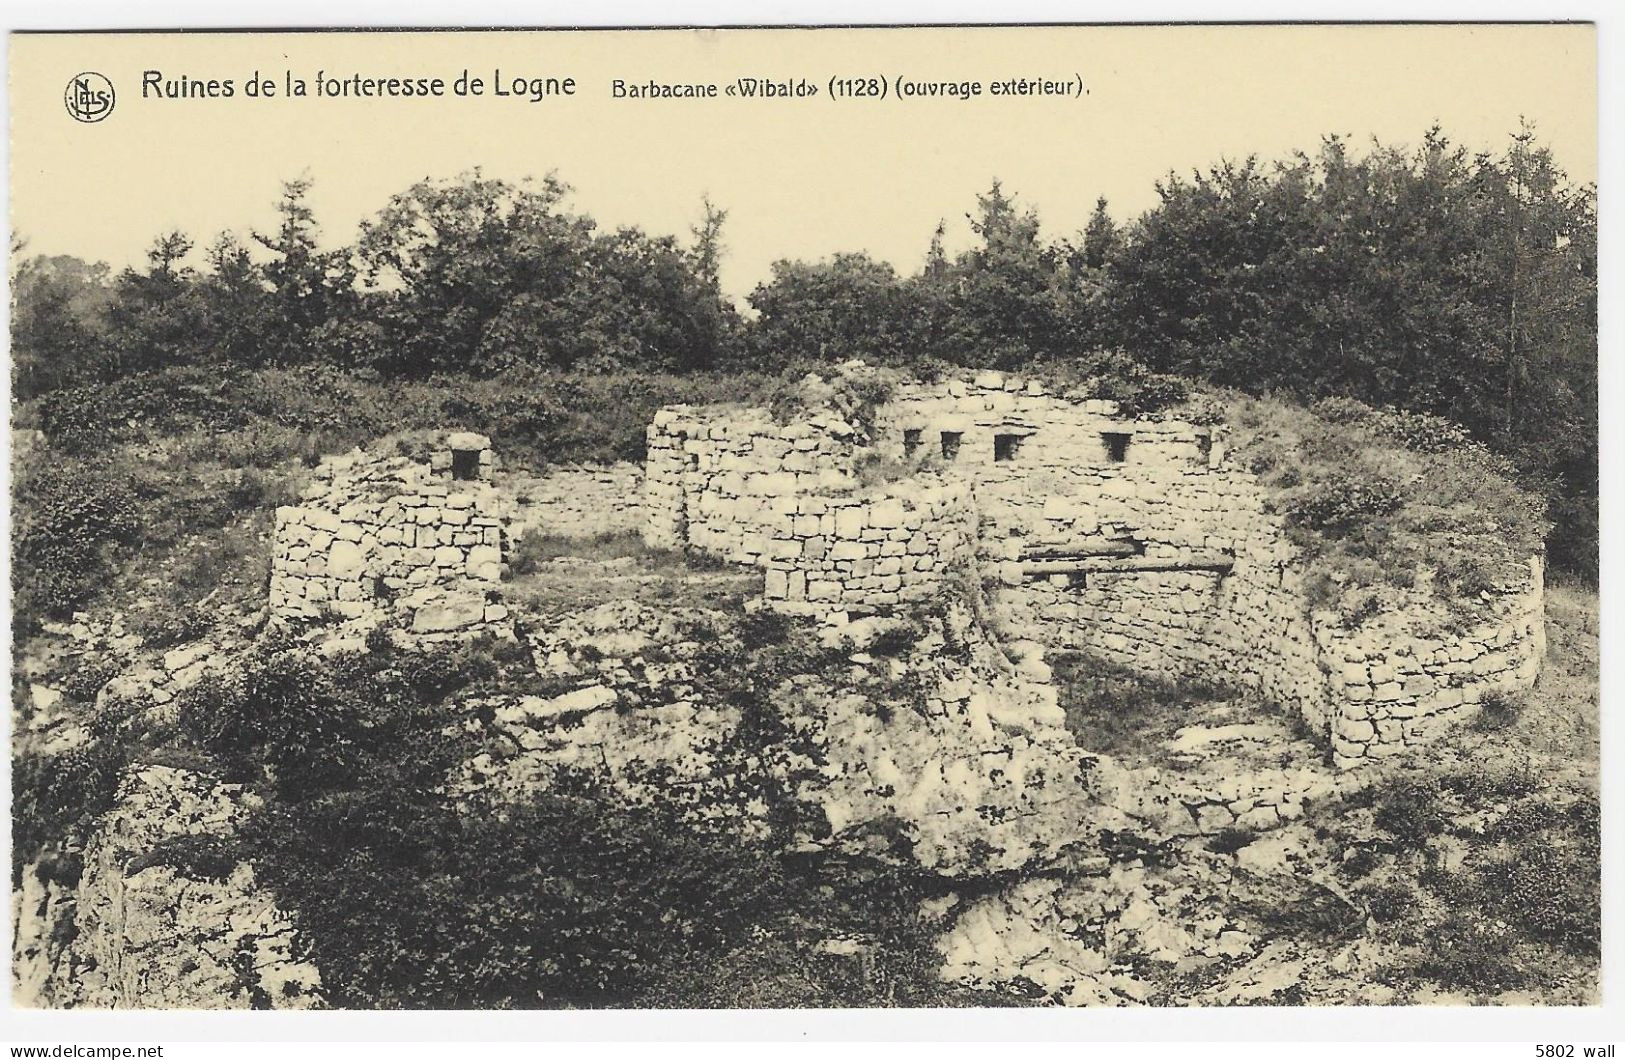 FERRIERES-LOGNE : Ruines De La Forteresse - Barbacane "Wibald" (1128 - Ouvrage Extérieur) - Ferrières